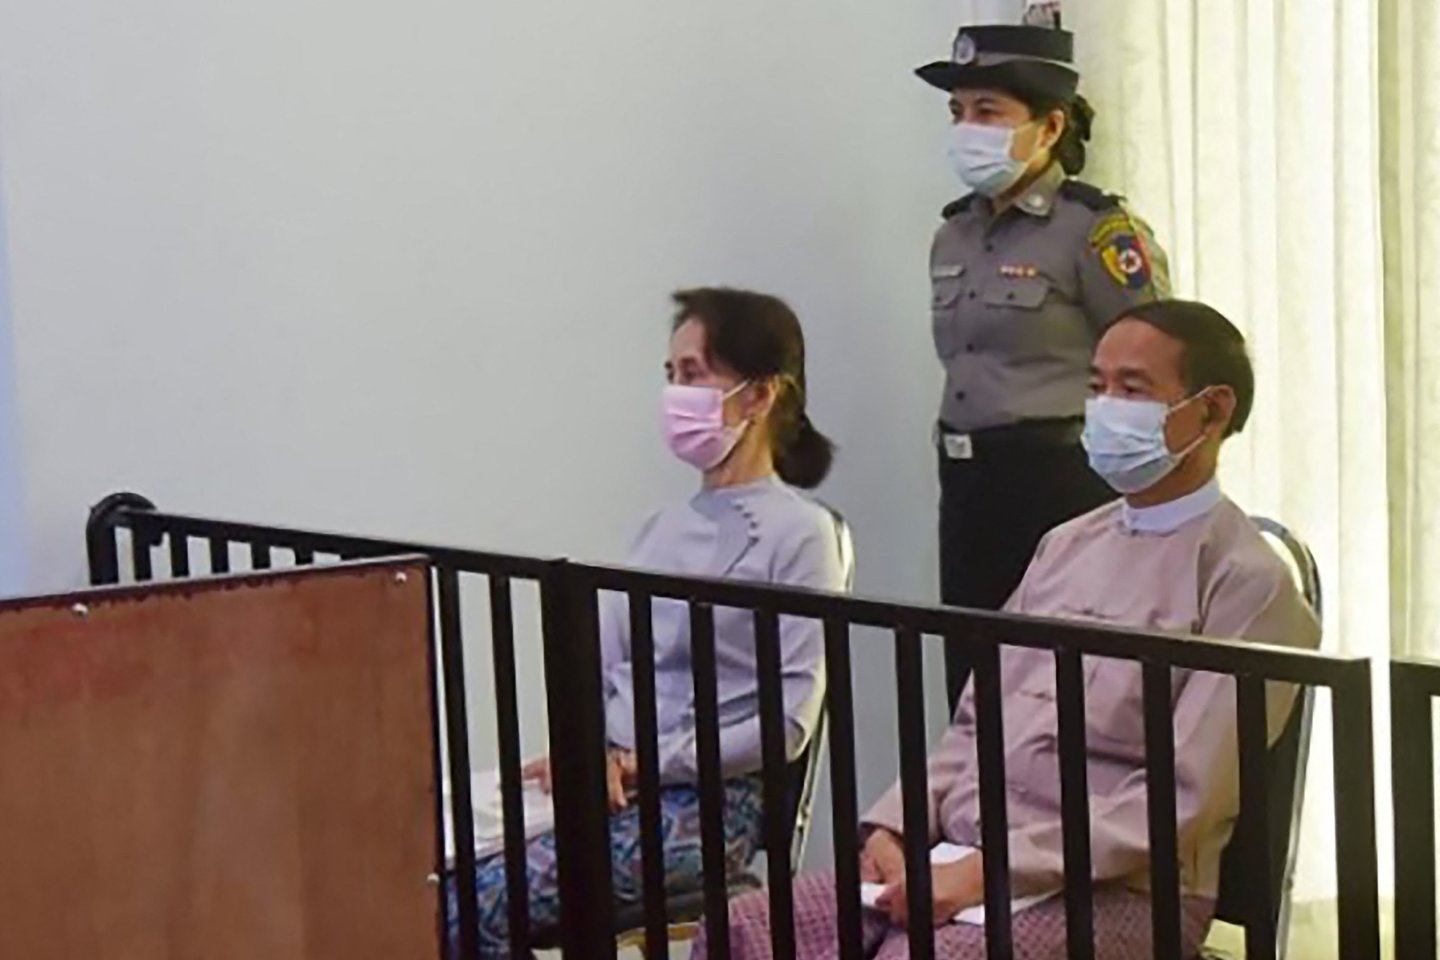  Mianmare kitą savaitę prasidės nuverstos lyderės teismas, sako jos advokatė.  <br> AFP/Scanpix nuotr.